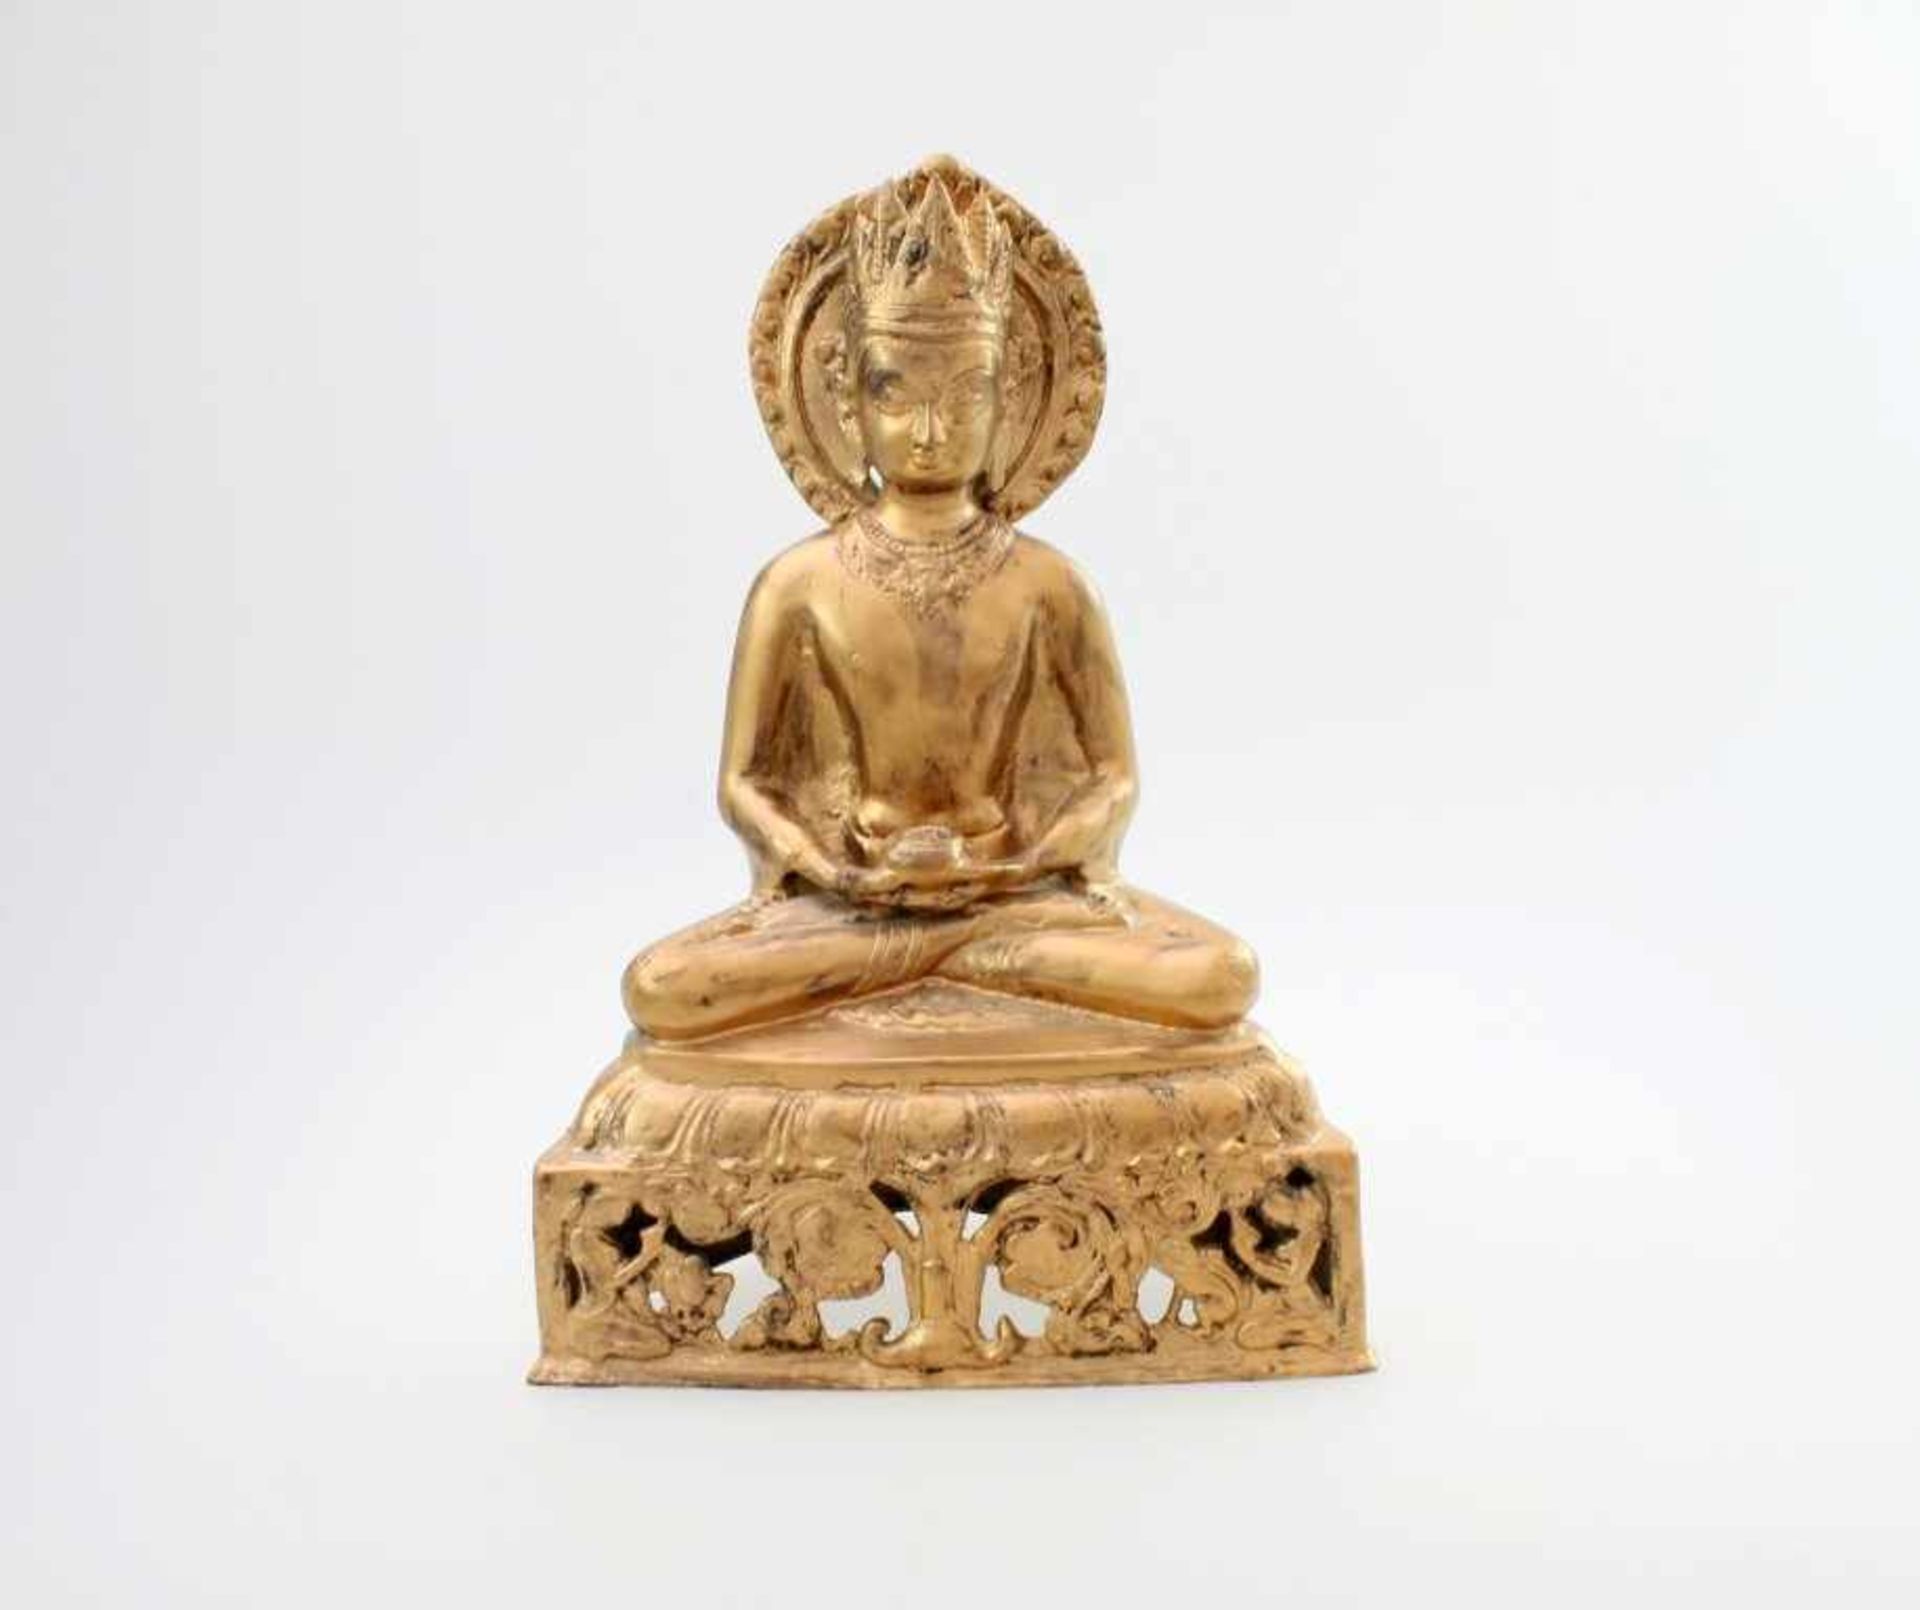 Buddha - Indien Meditierender Buddha, Teeschale in den Händen, hinter dem Kopf Korona. Auf